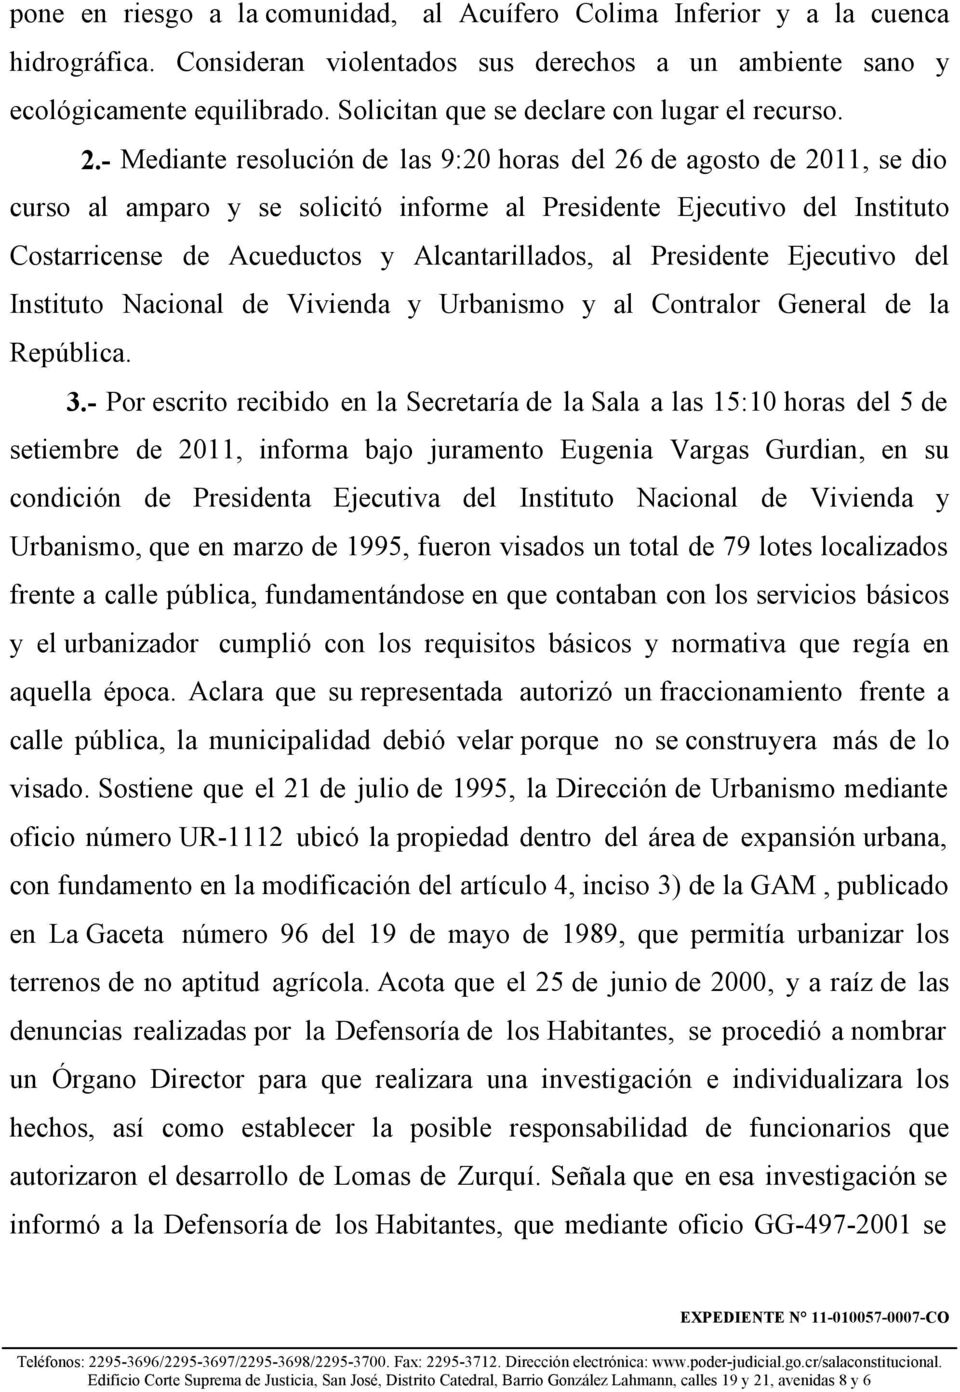 - Mediante resolución de las 9:20 horas del 26 de agosto de 2011, se dio curso al amparo y se solicitó informe al Presidente Ejecutivo del Instituto Costarricense de Acueductos y Alcantarillados, al